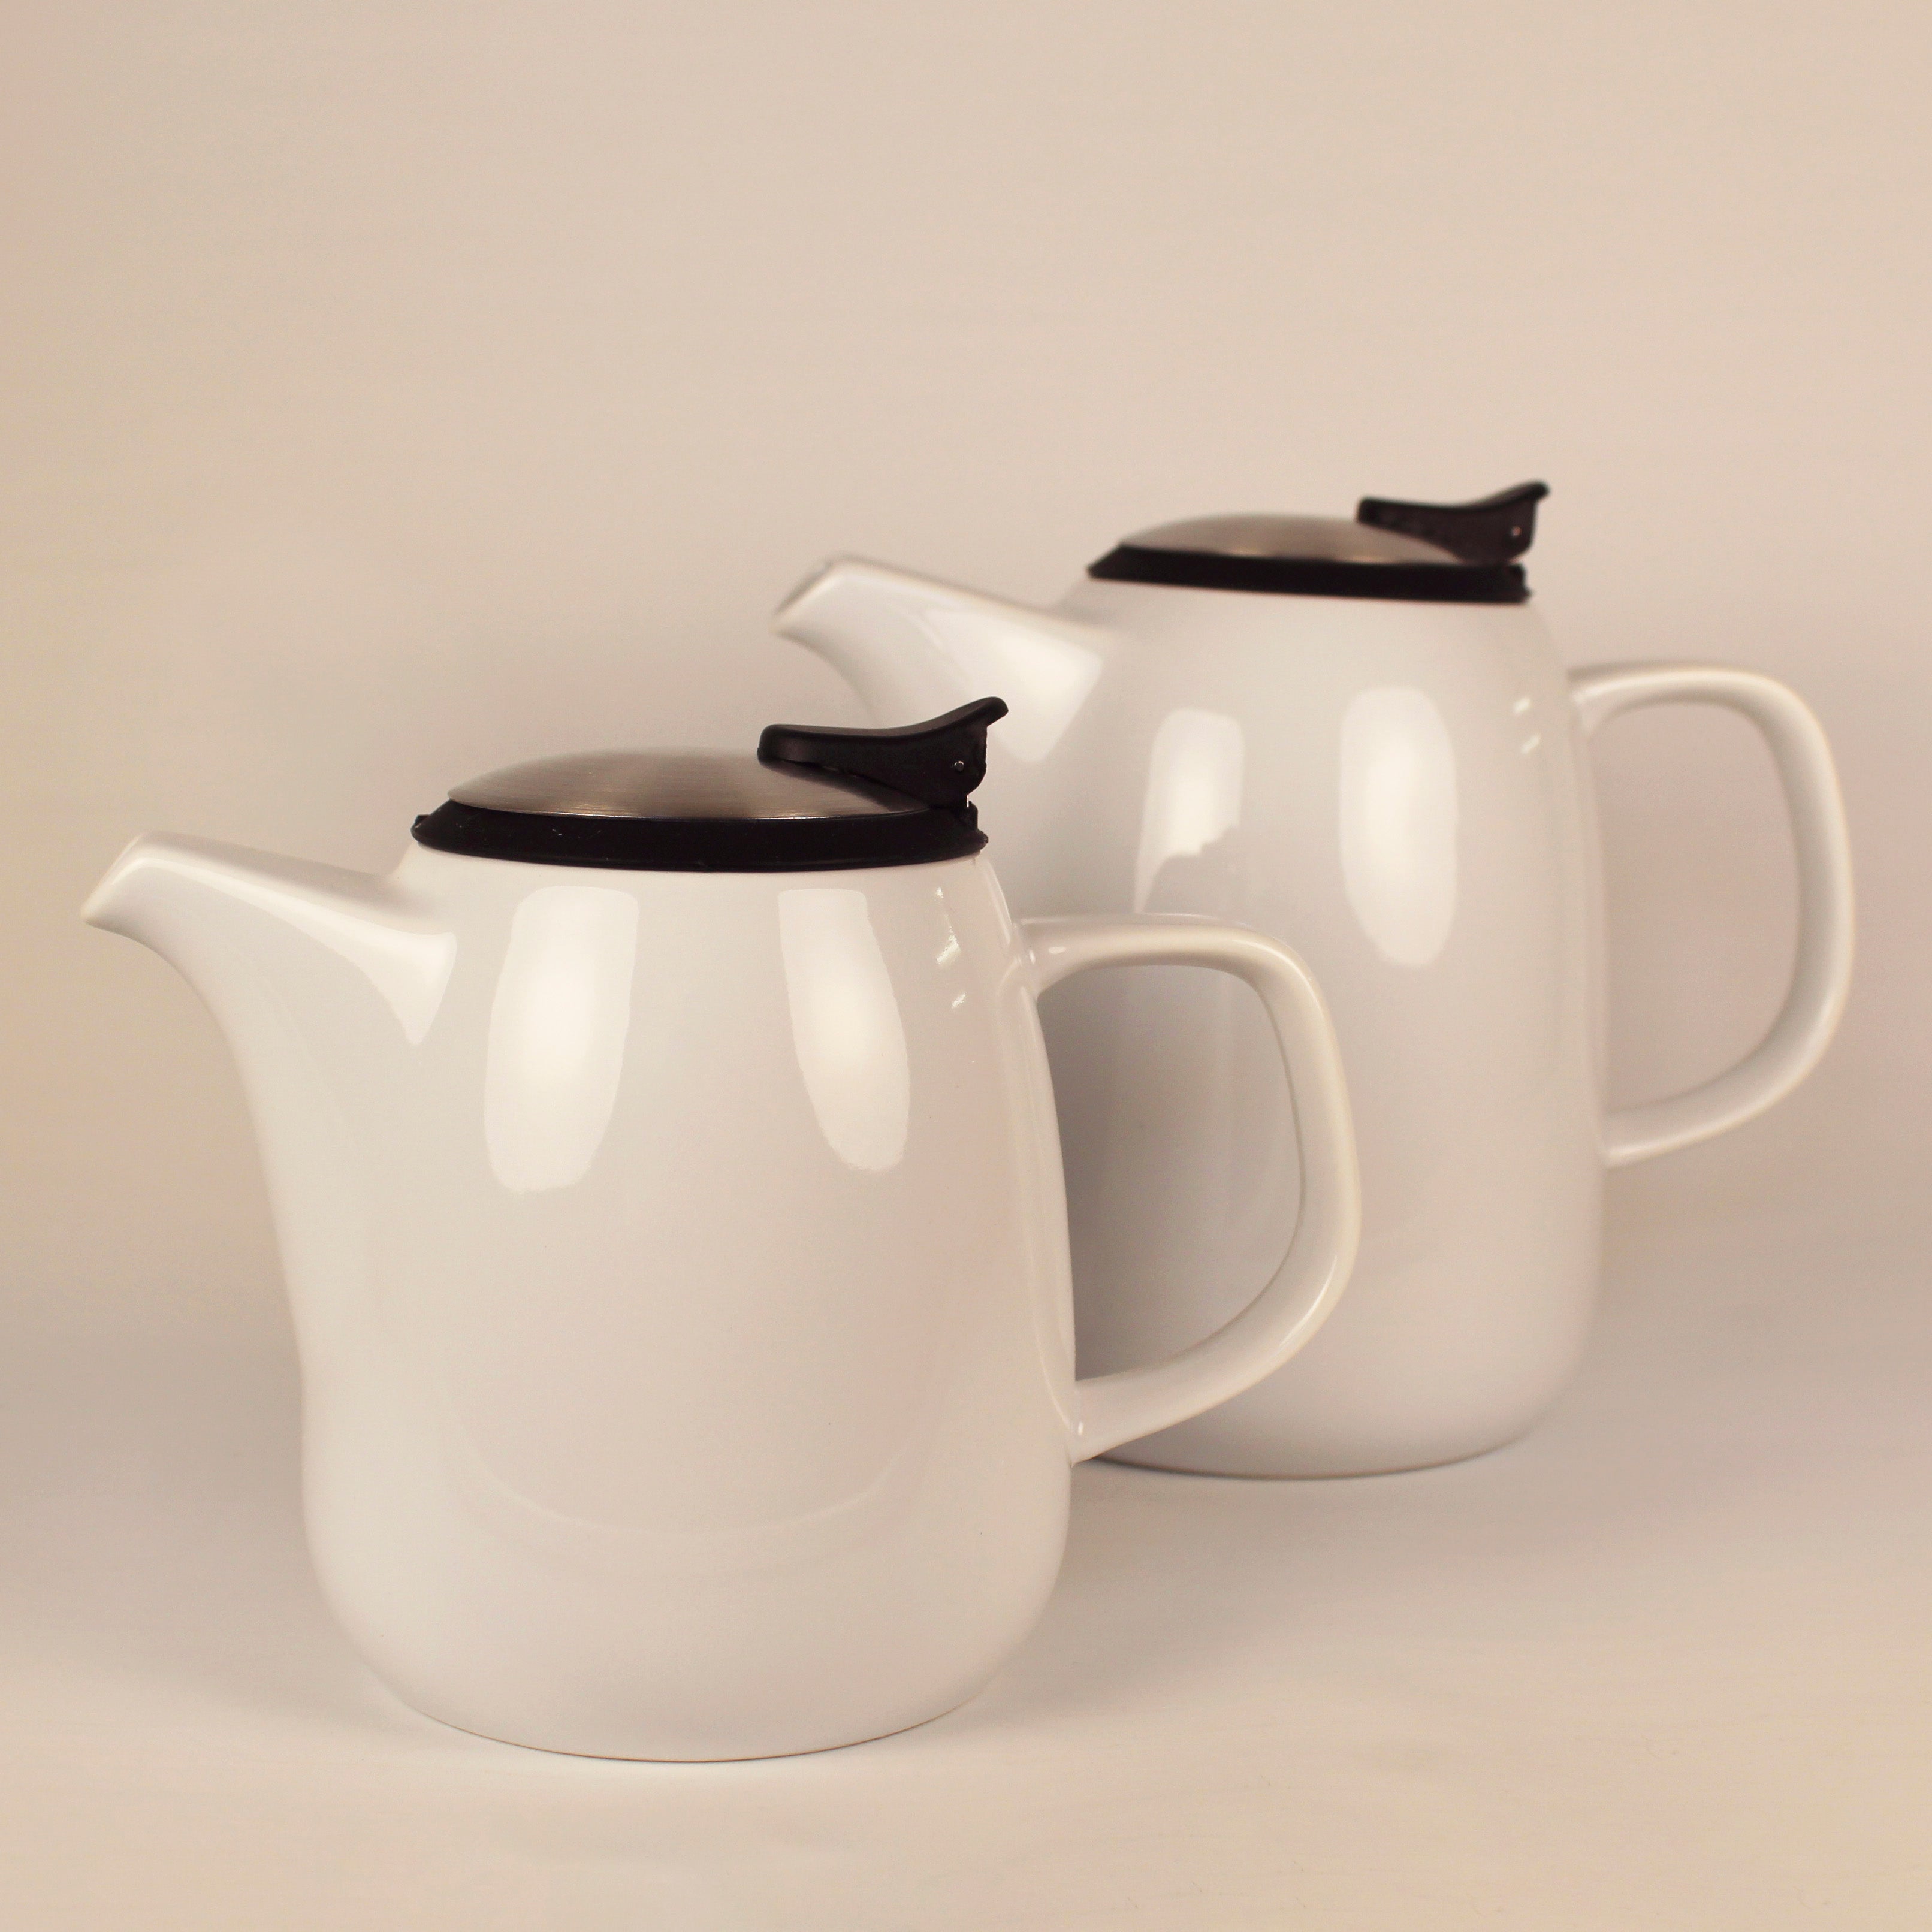 DAZE teapot 47oz ceramic